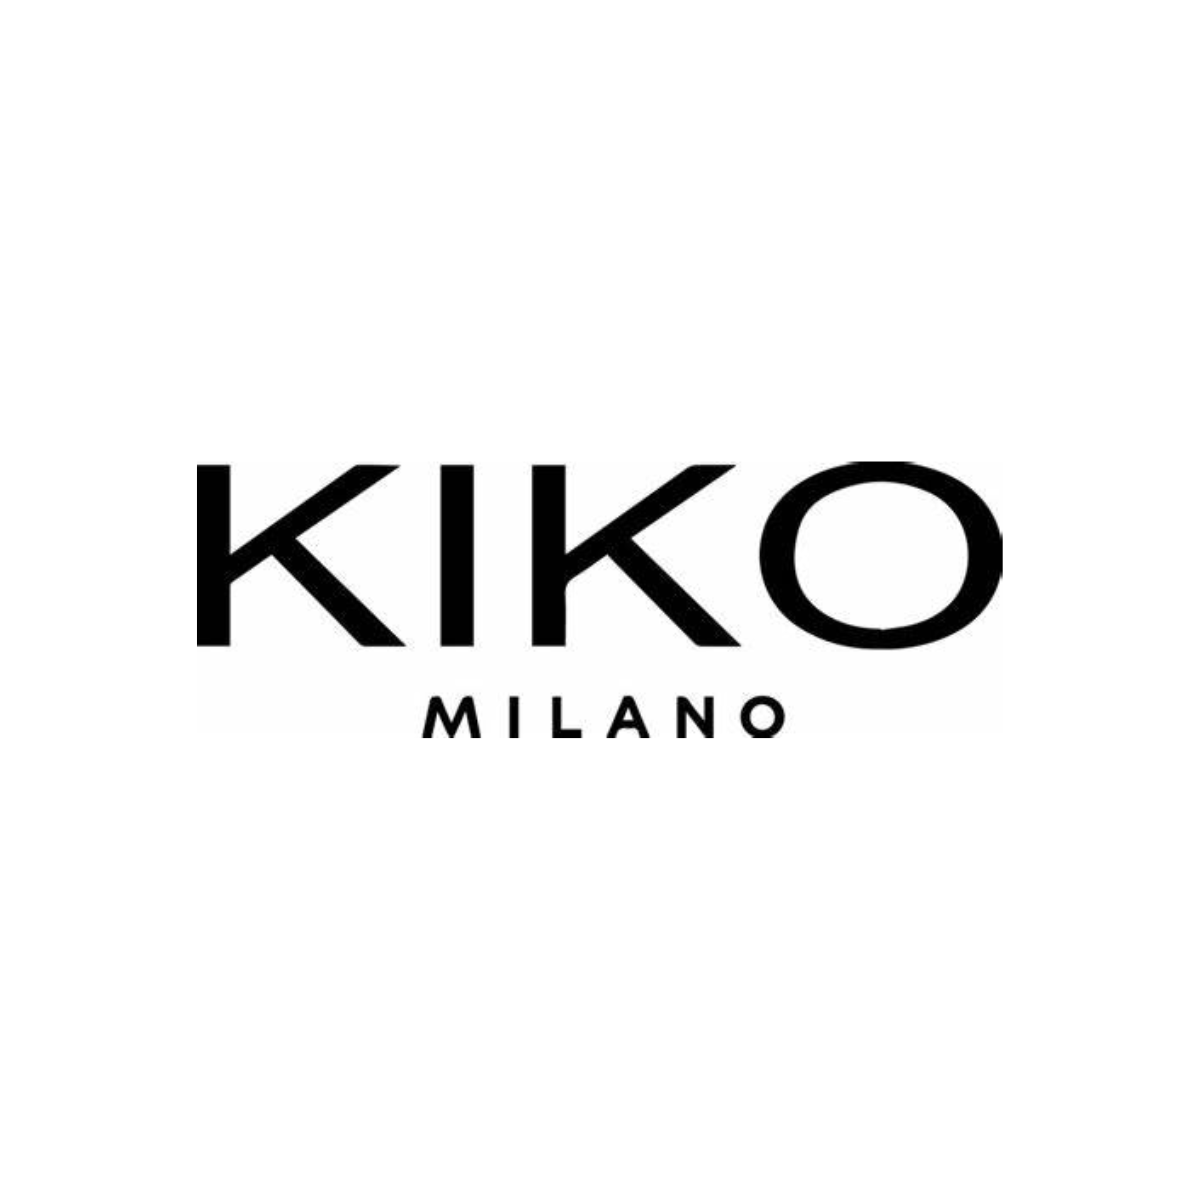 Le logo de Kiko est affiché ici pour mettre en avant son partenariat avec mavisitemedicale.fr, marque d'AKTISEA, dans la gestion des visites médicales des collaborateurs. Chez AKTISEA, entreprise adaptée, nous sommes engagés pour plus d'inclusion.